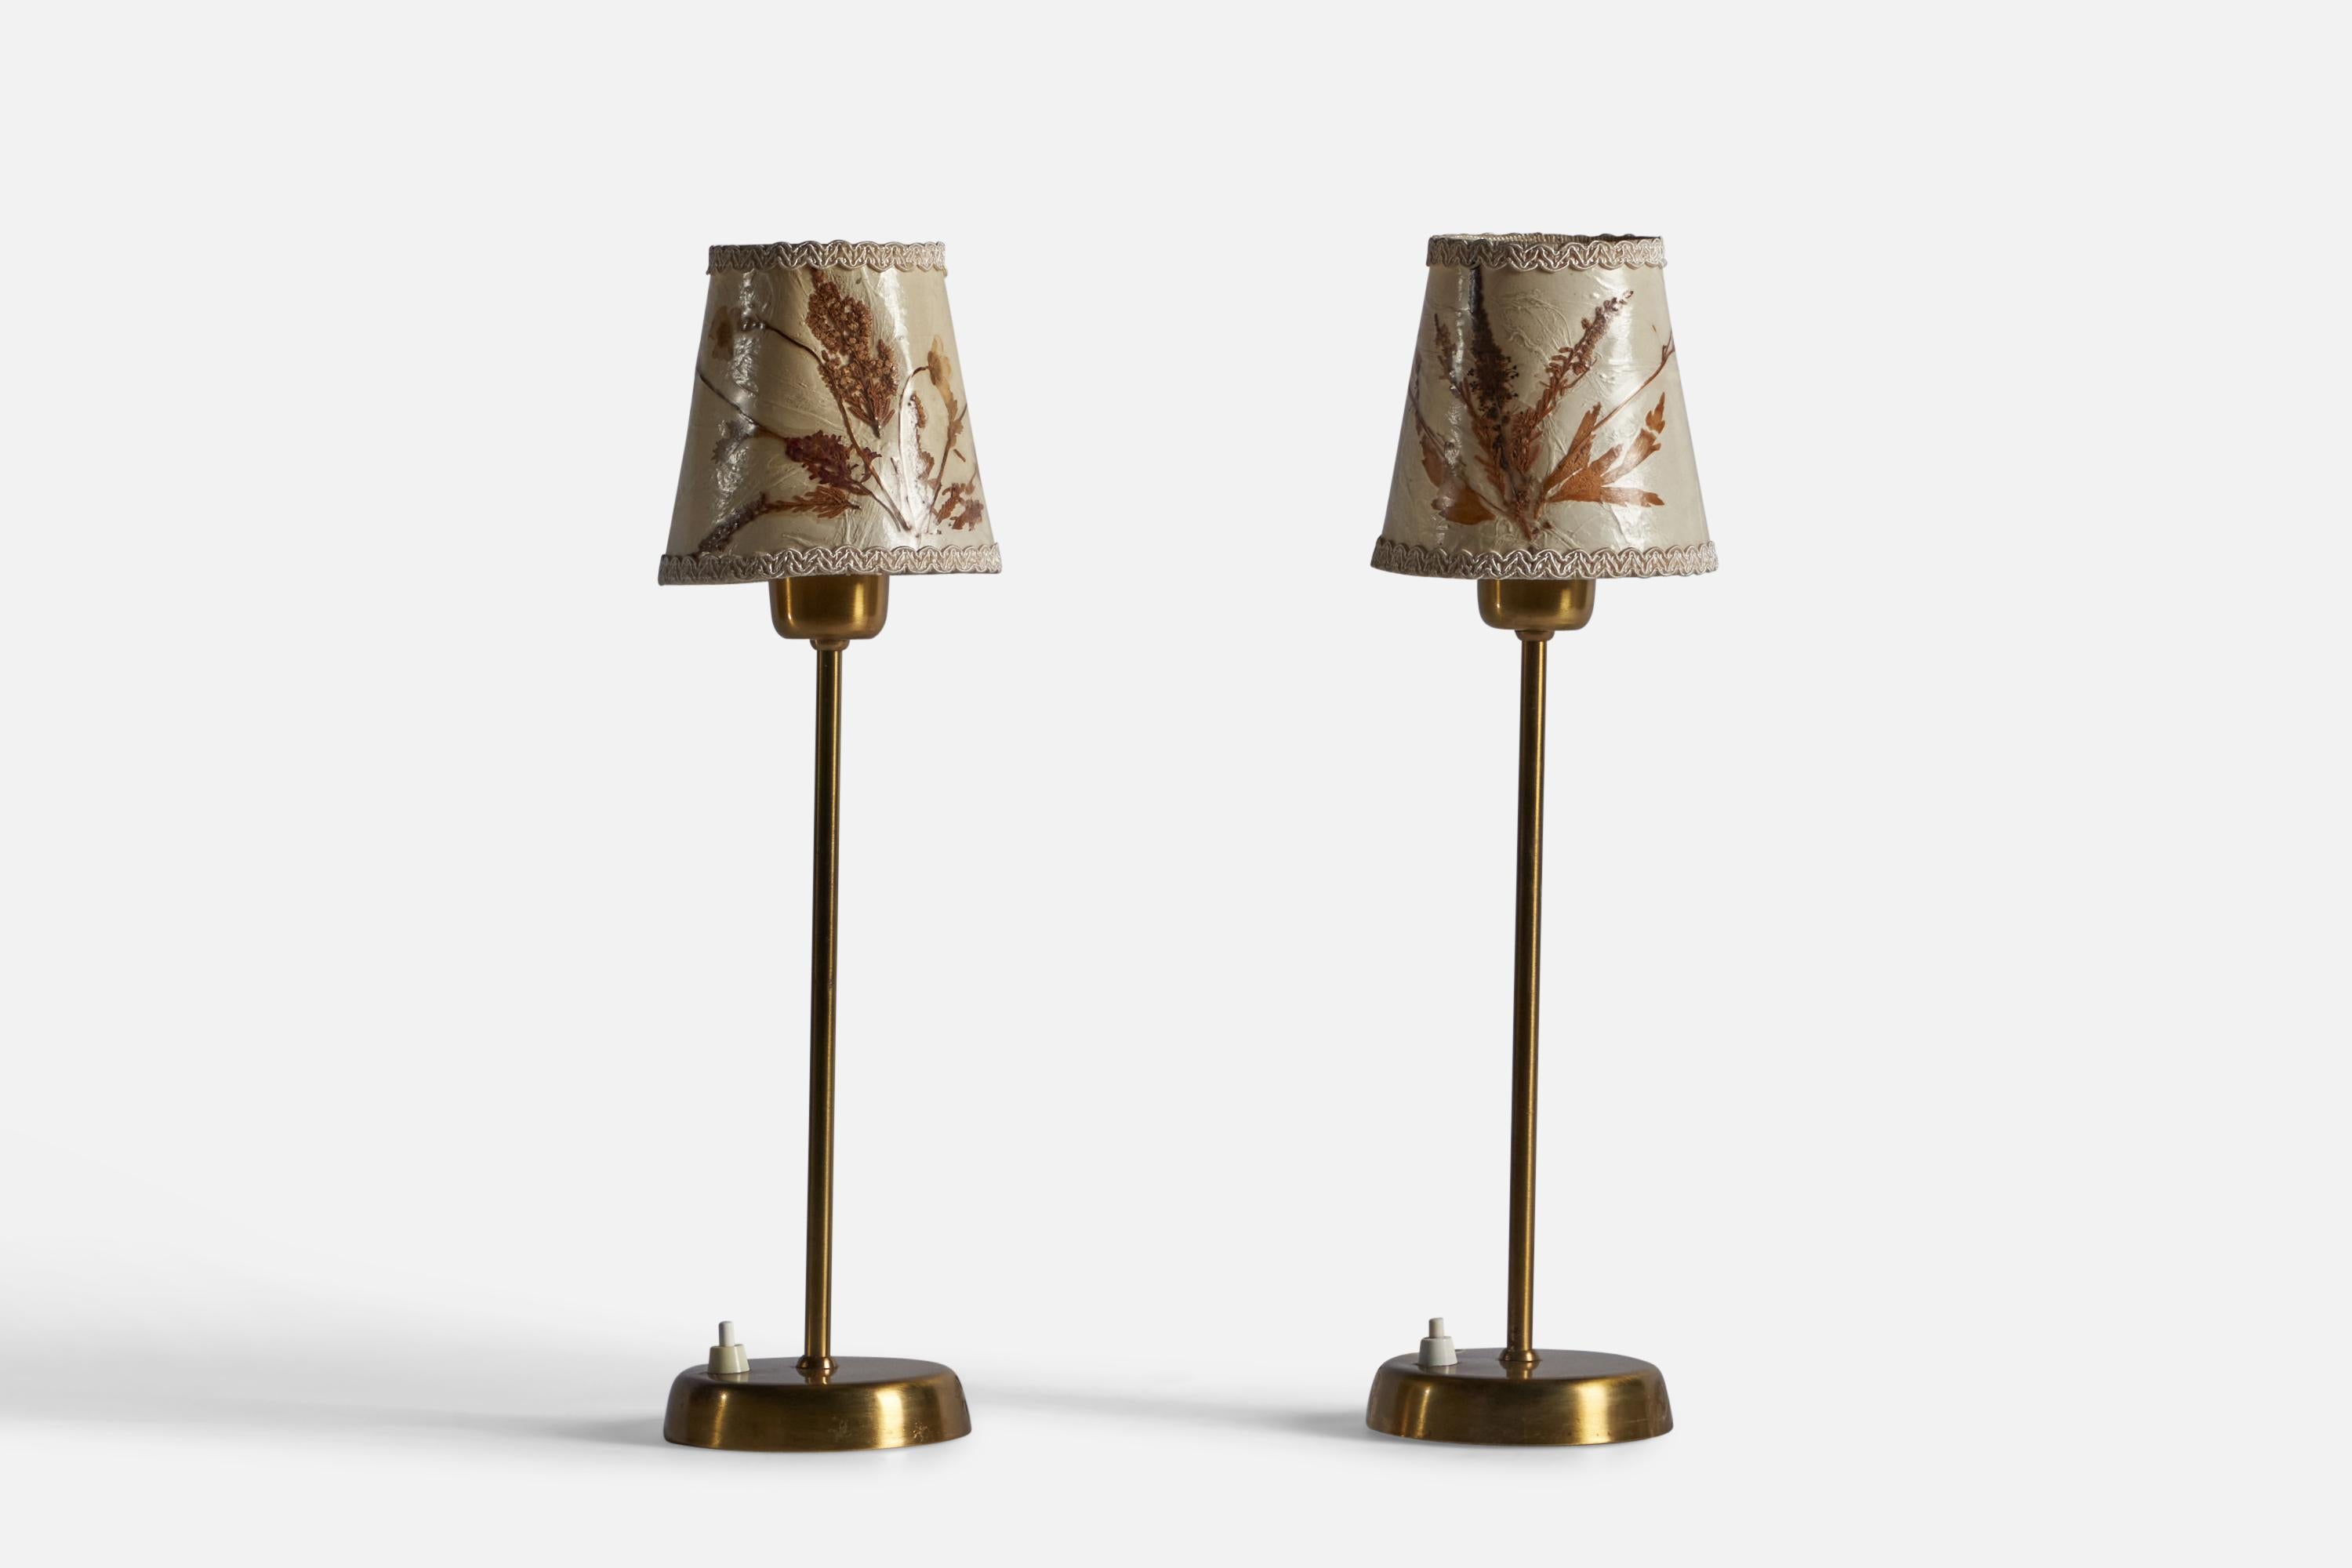 Ein Paar Tischlampen aus Messing und Papier, entworfen und hergestellt von Tyringe Konsthantverk, Schweden, ca. 1950er Jahre.

Gesamtabmessungen: 17